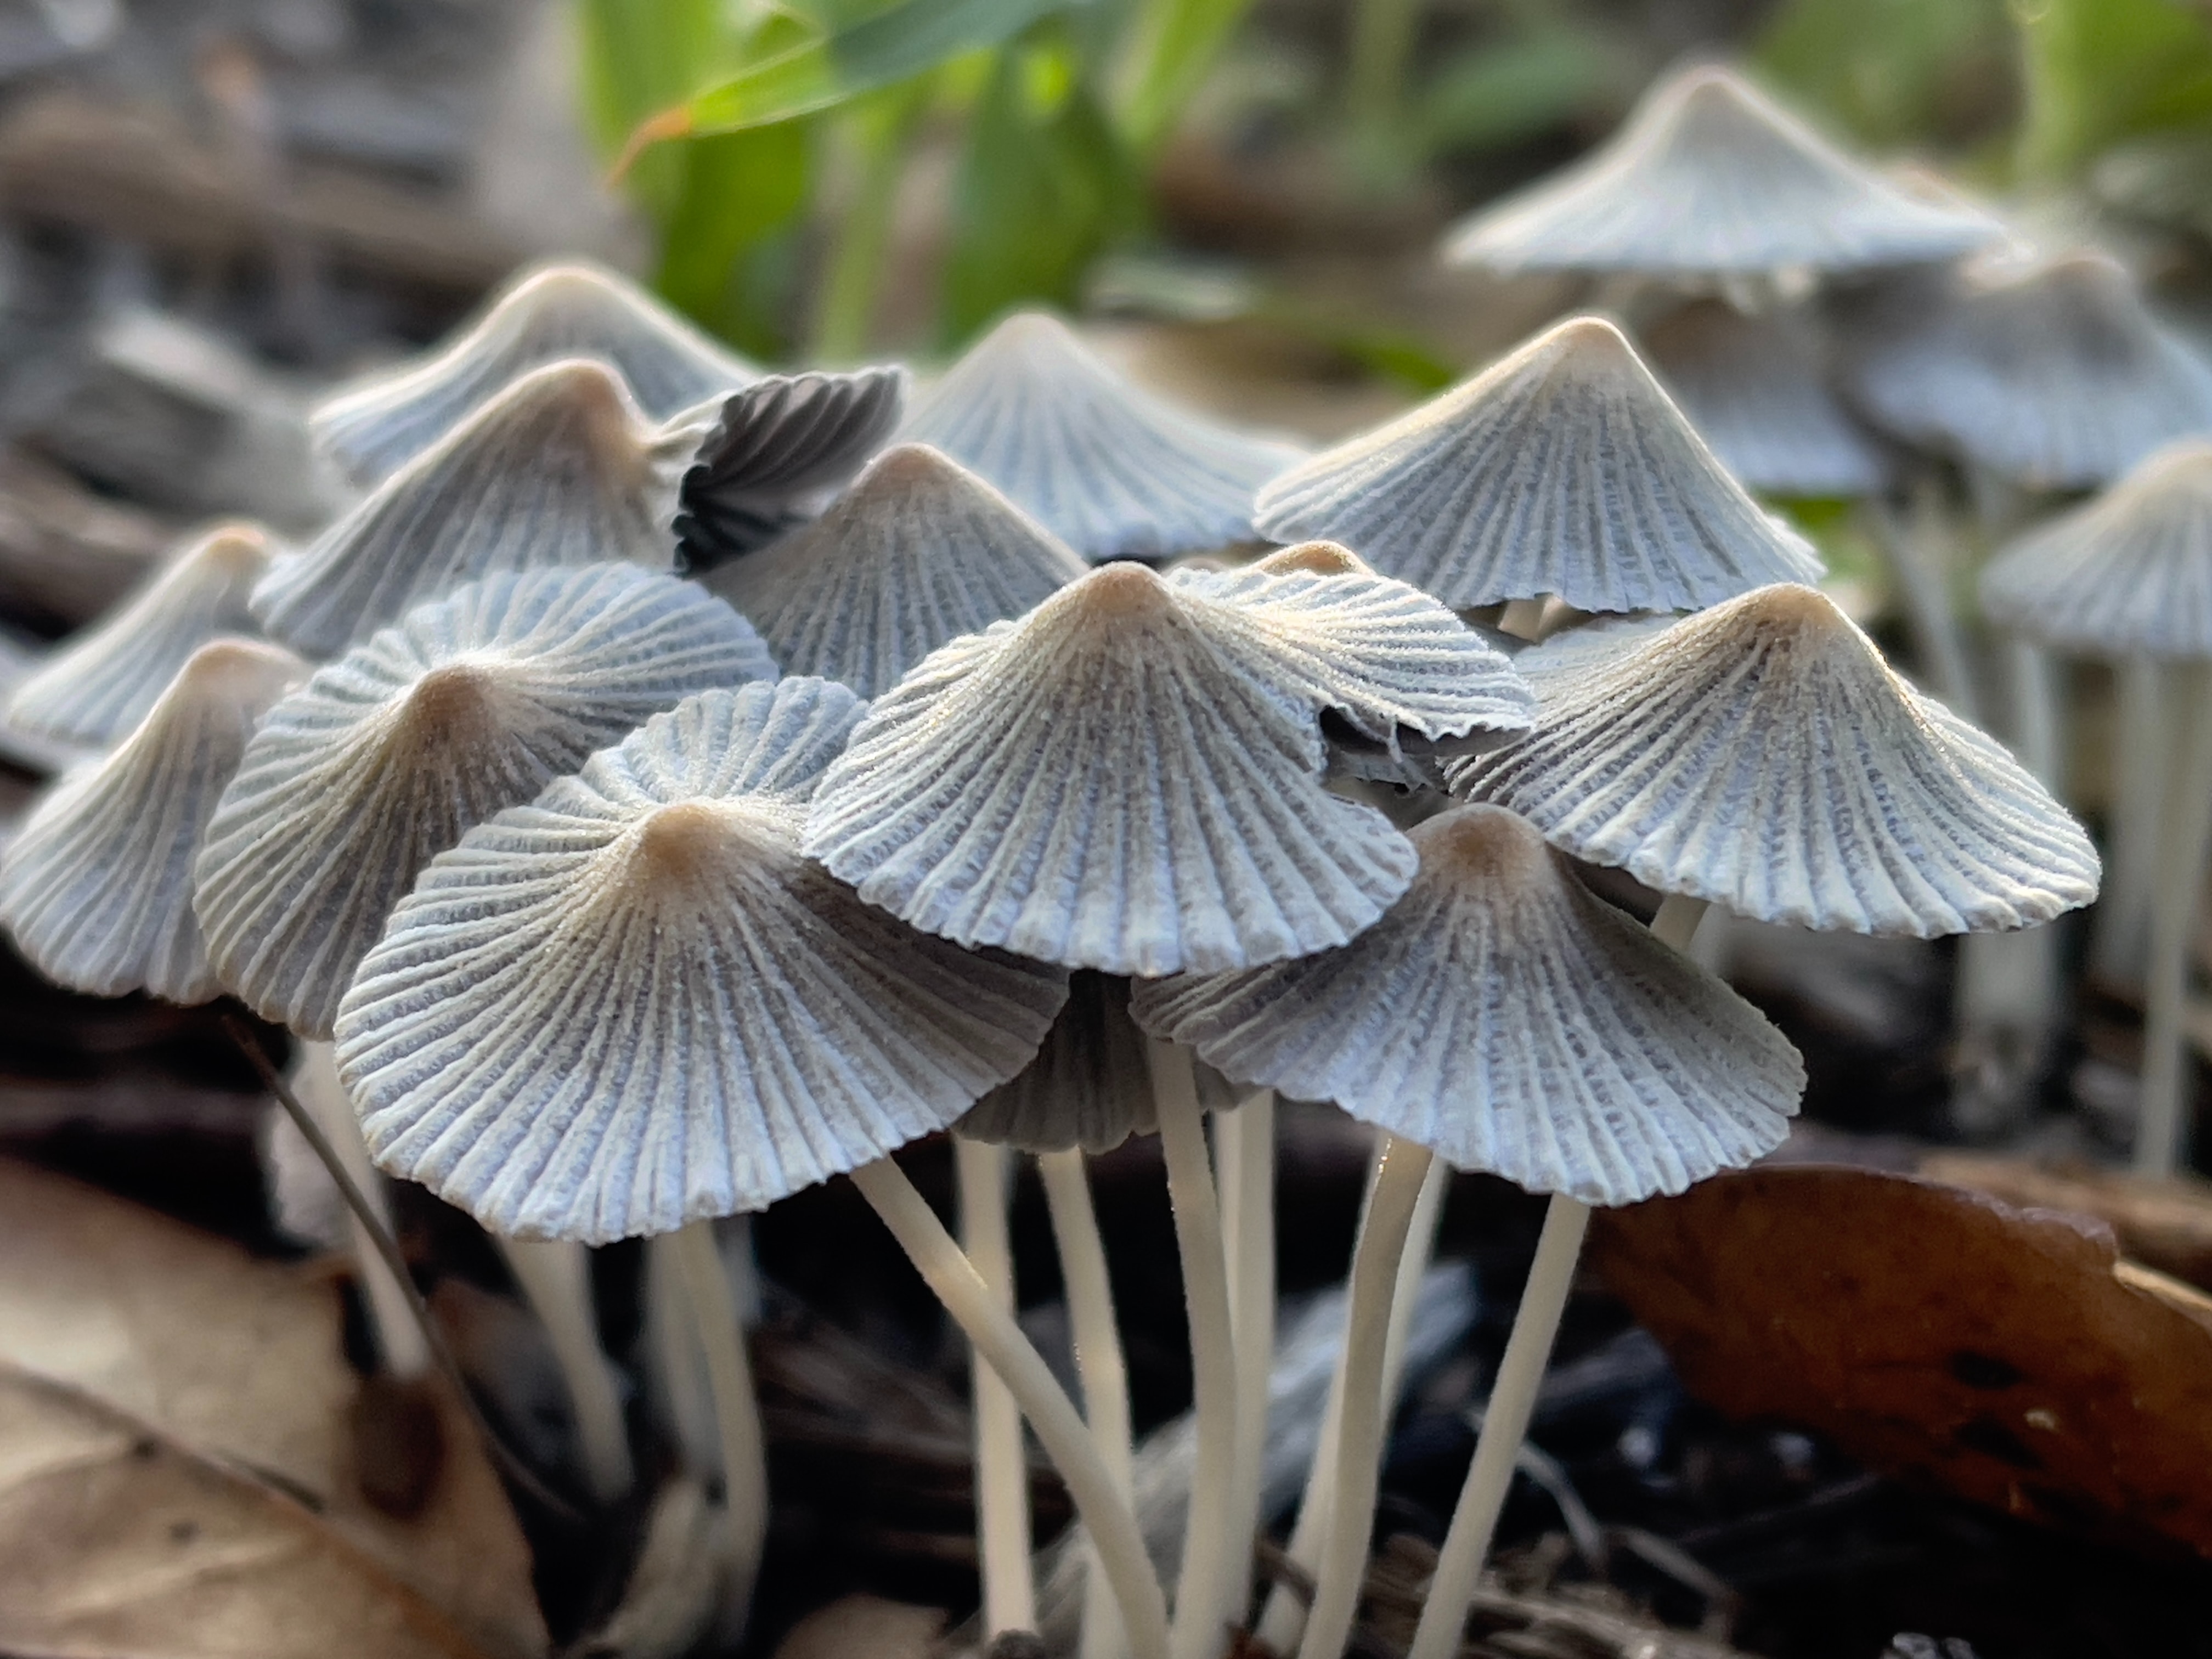 Mushroom supplement capsules